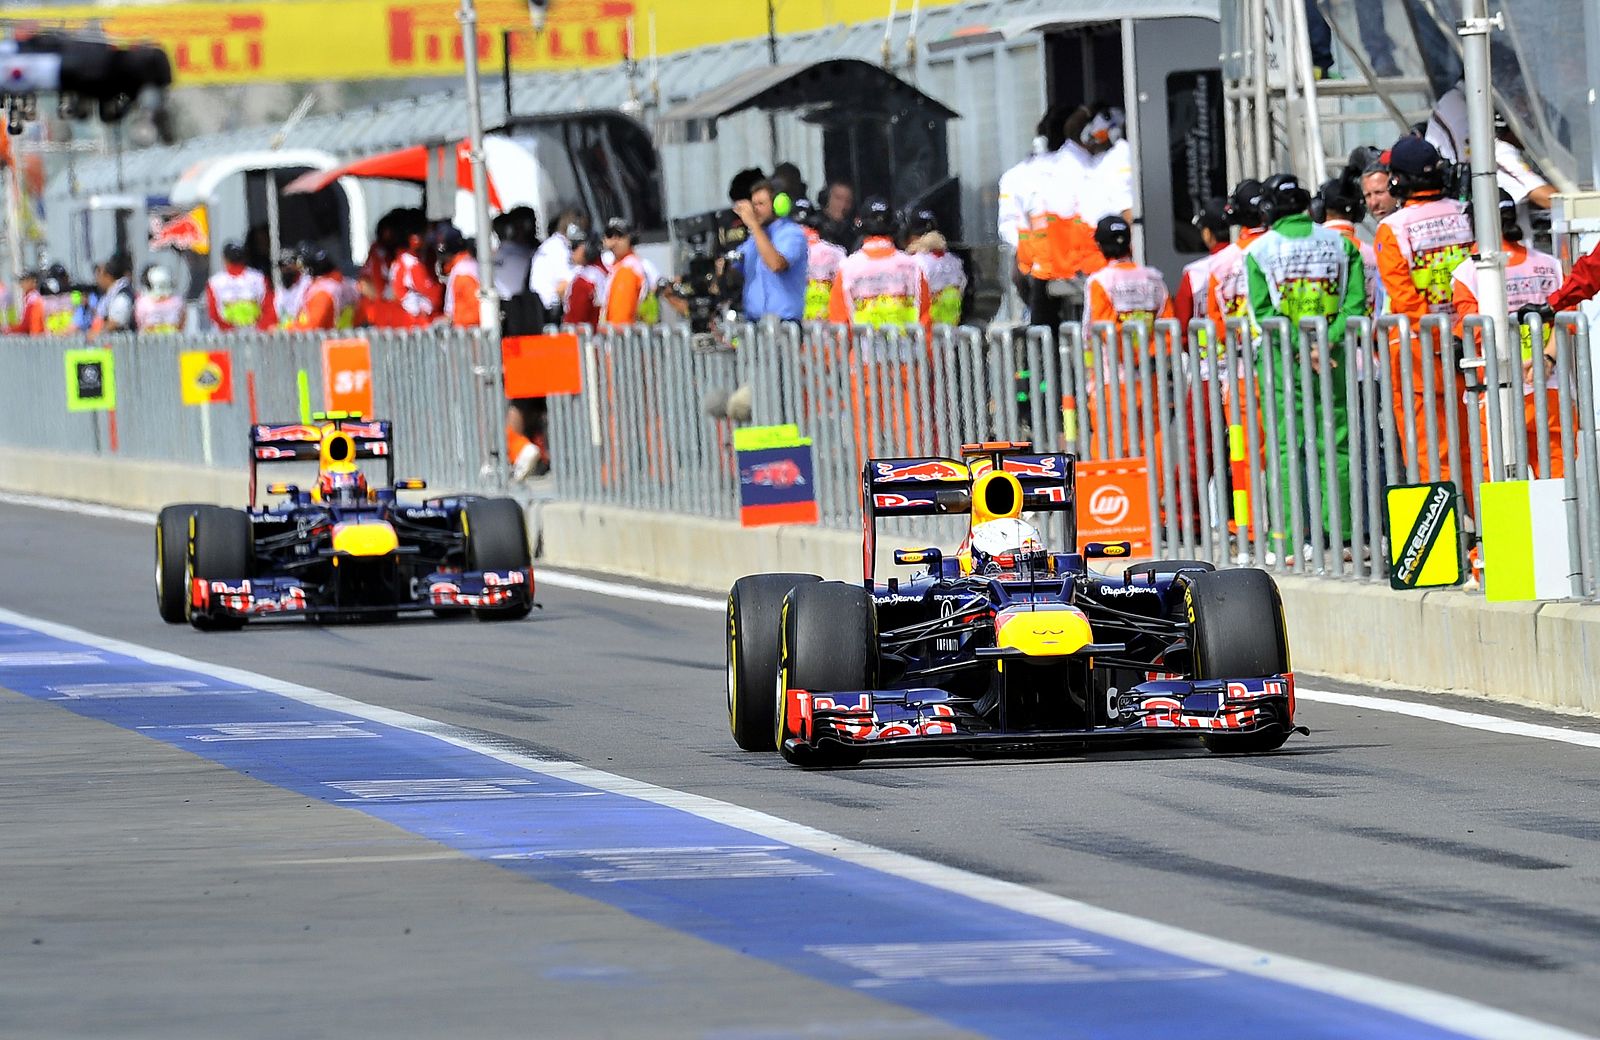 Los pilotos de Red Bull, Vettel y Webber, han dominado los segundos libres en Corea.